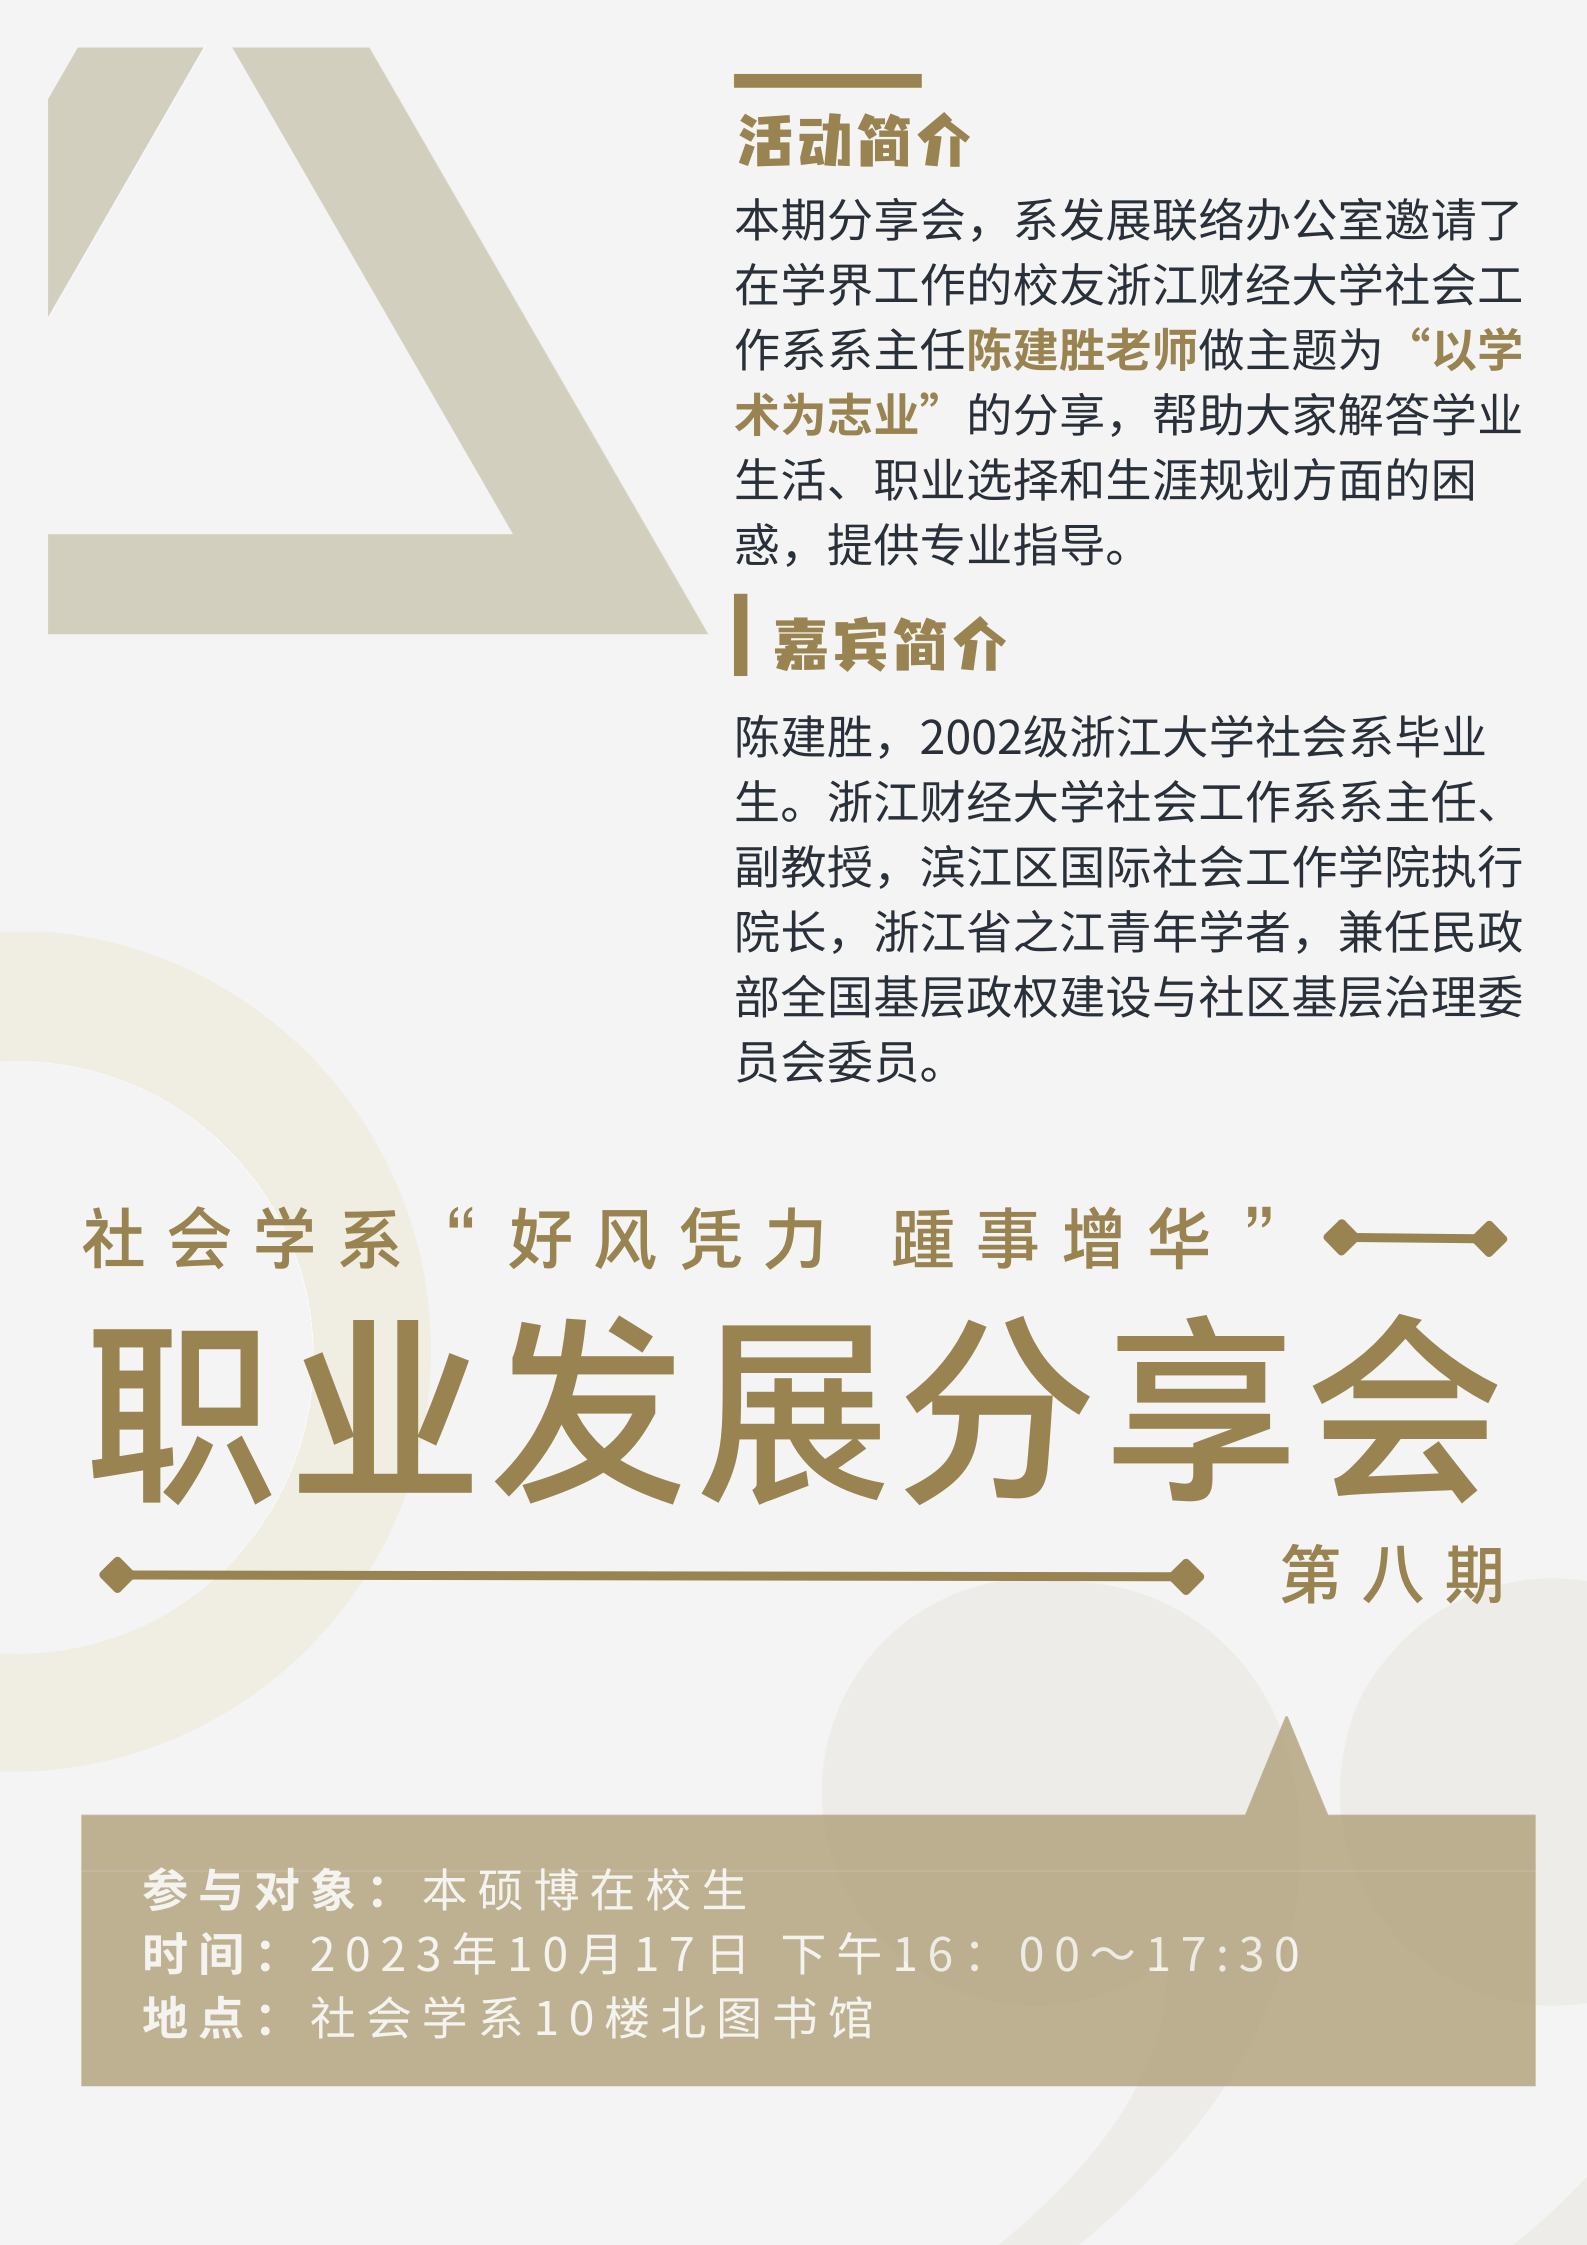 黄白色人物人物校园讲座中文海报 (1).png